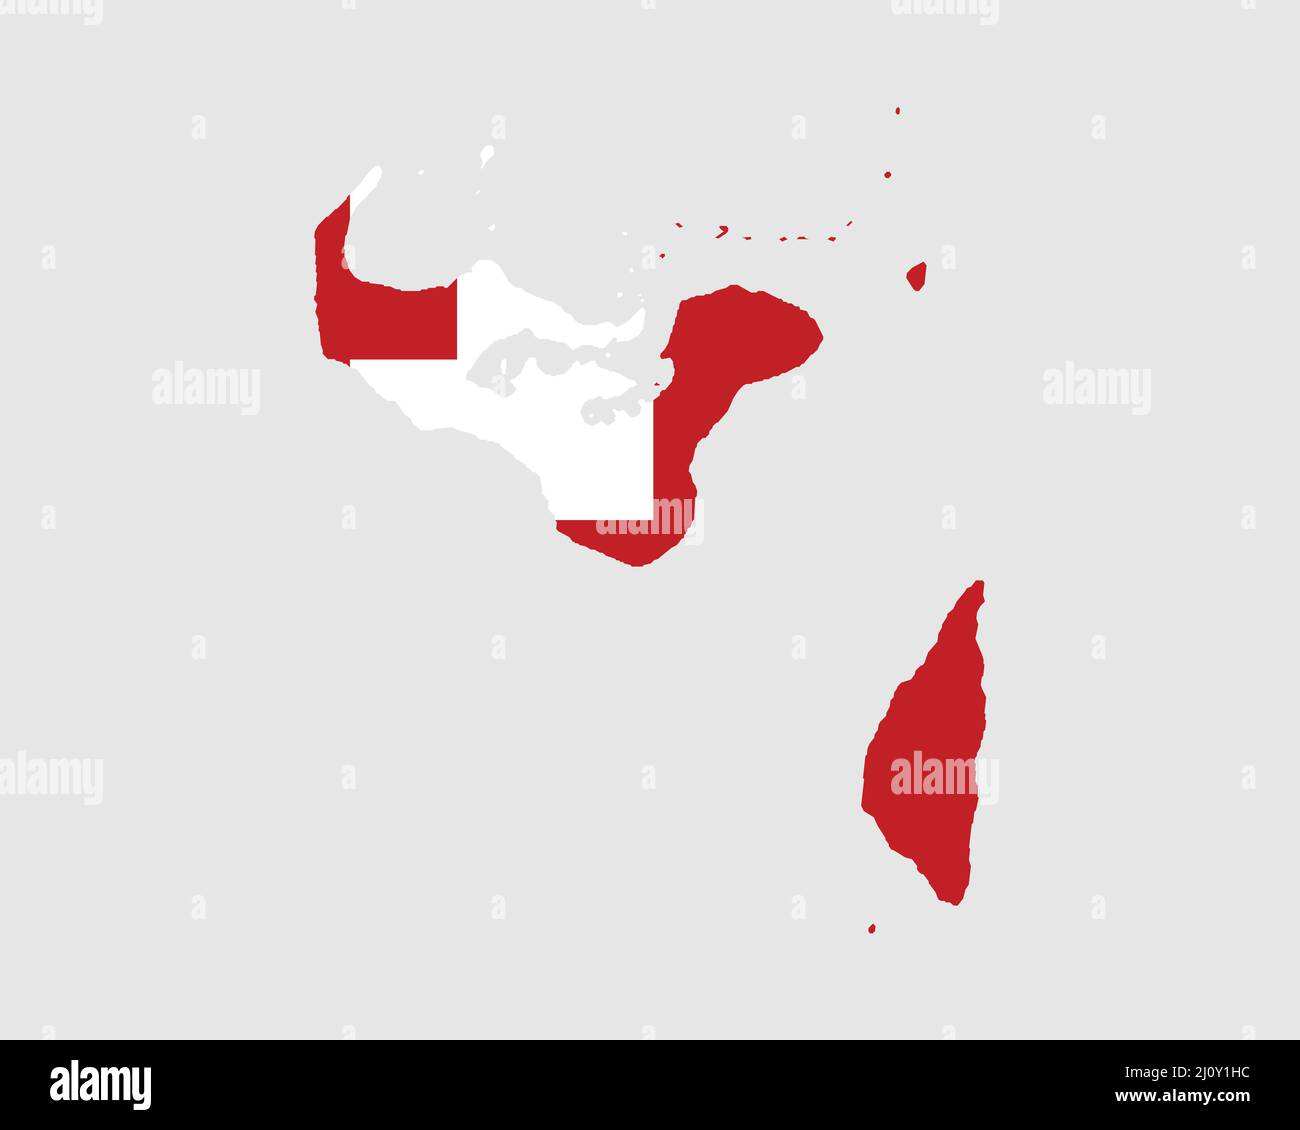 Karte Mit Tonga-Flagge. Karte des Königreichs Tonga mit dem Tongaer Landbanner. Vektorgrafik. Stock Vektor